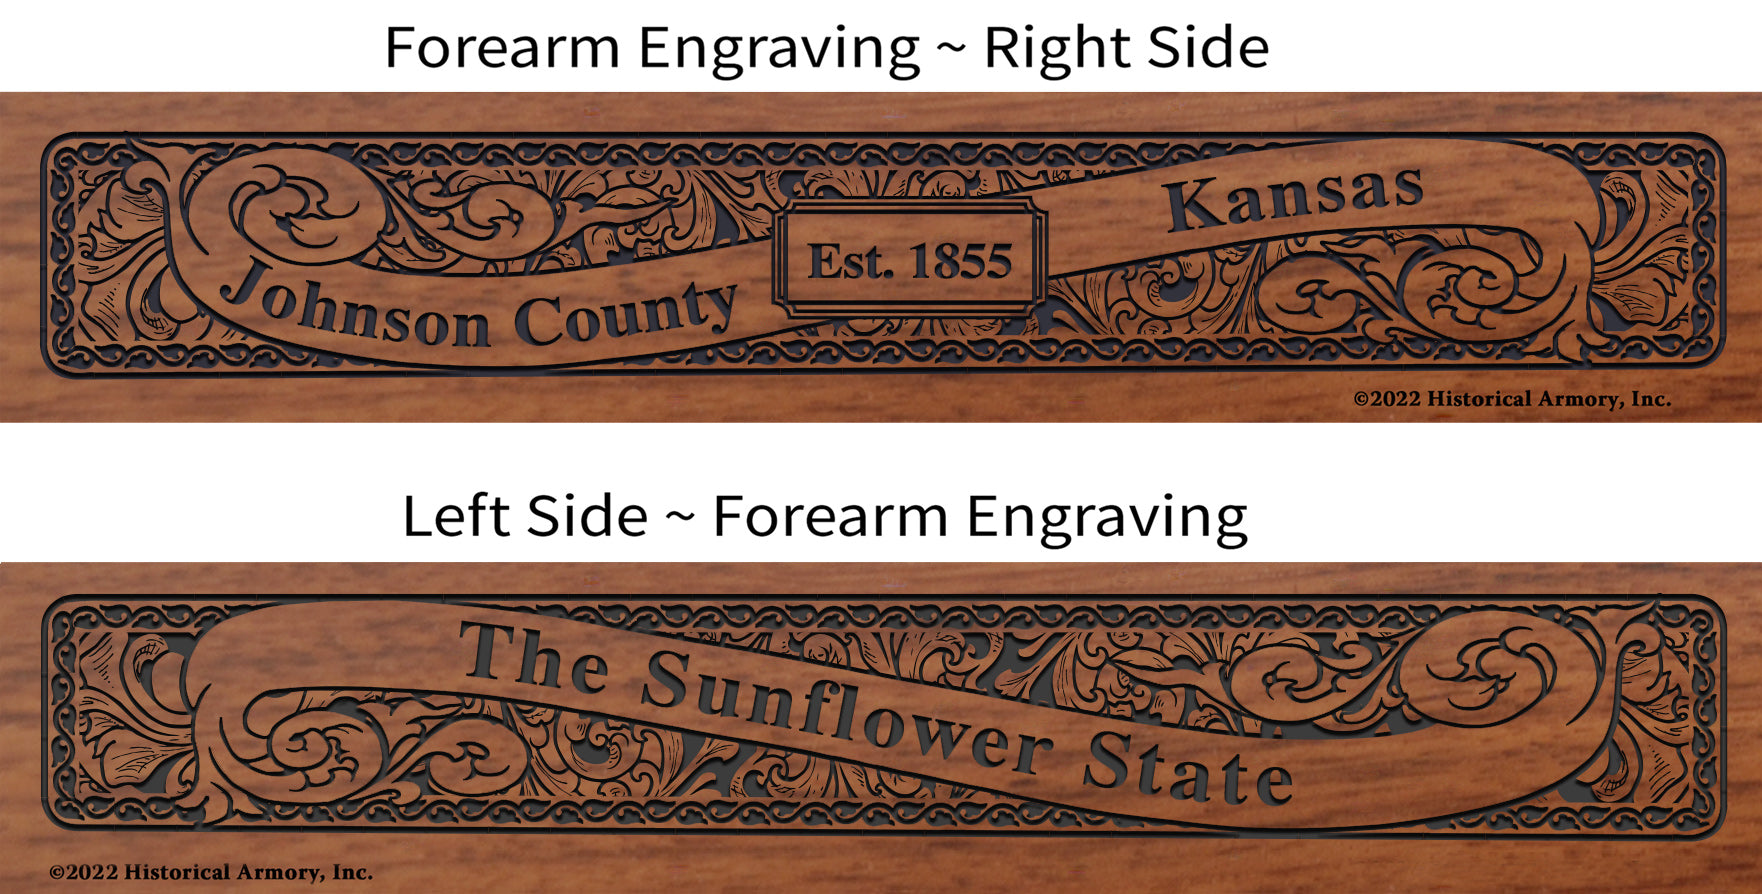 Johnson County Kansas Engraved Rifle Forearm